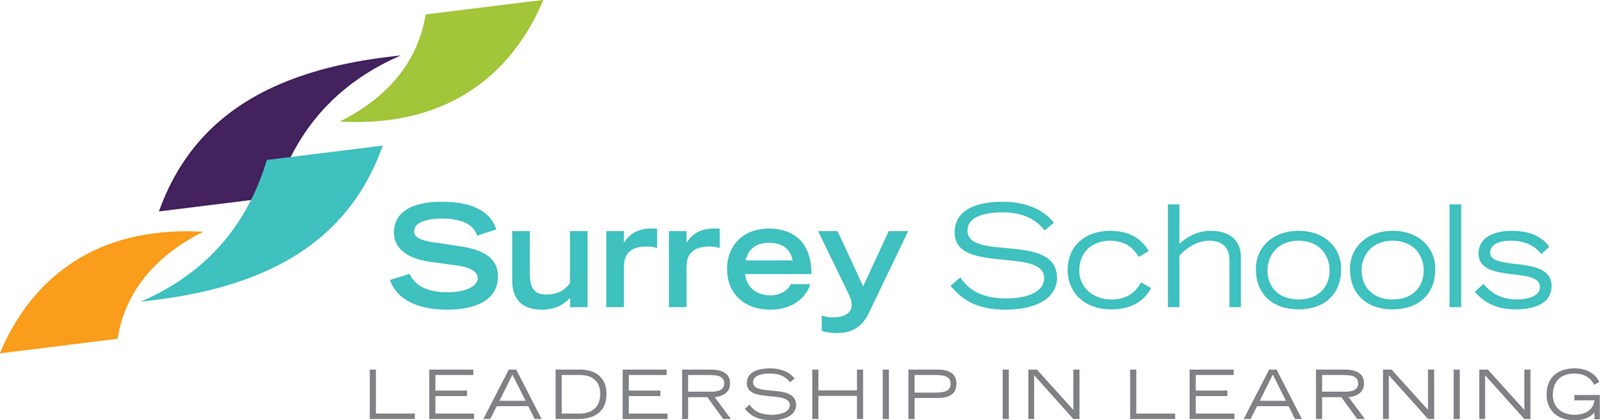 surrey-schools-logo.26f586136405-2.jpg